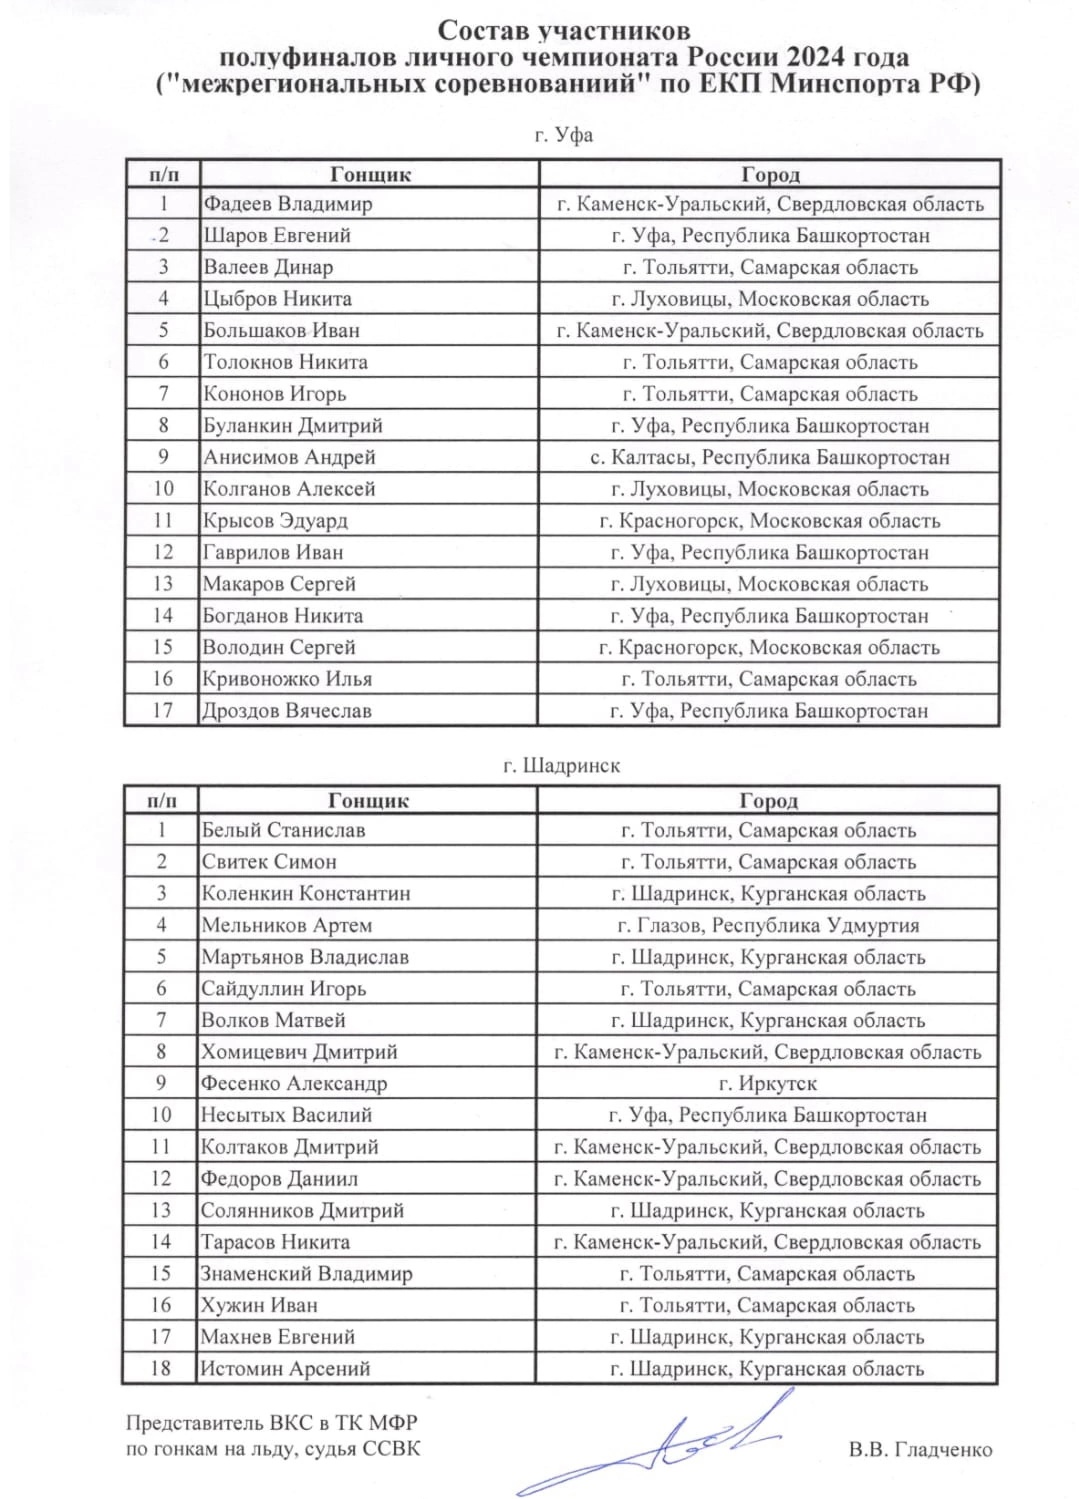 Состав участников полуфиналов личного чемпионата России 2024 года по мотогонкам на льду